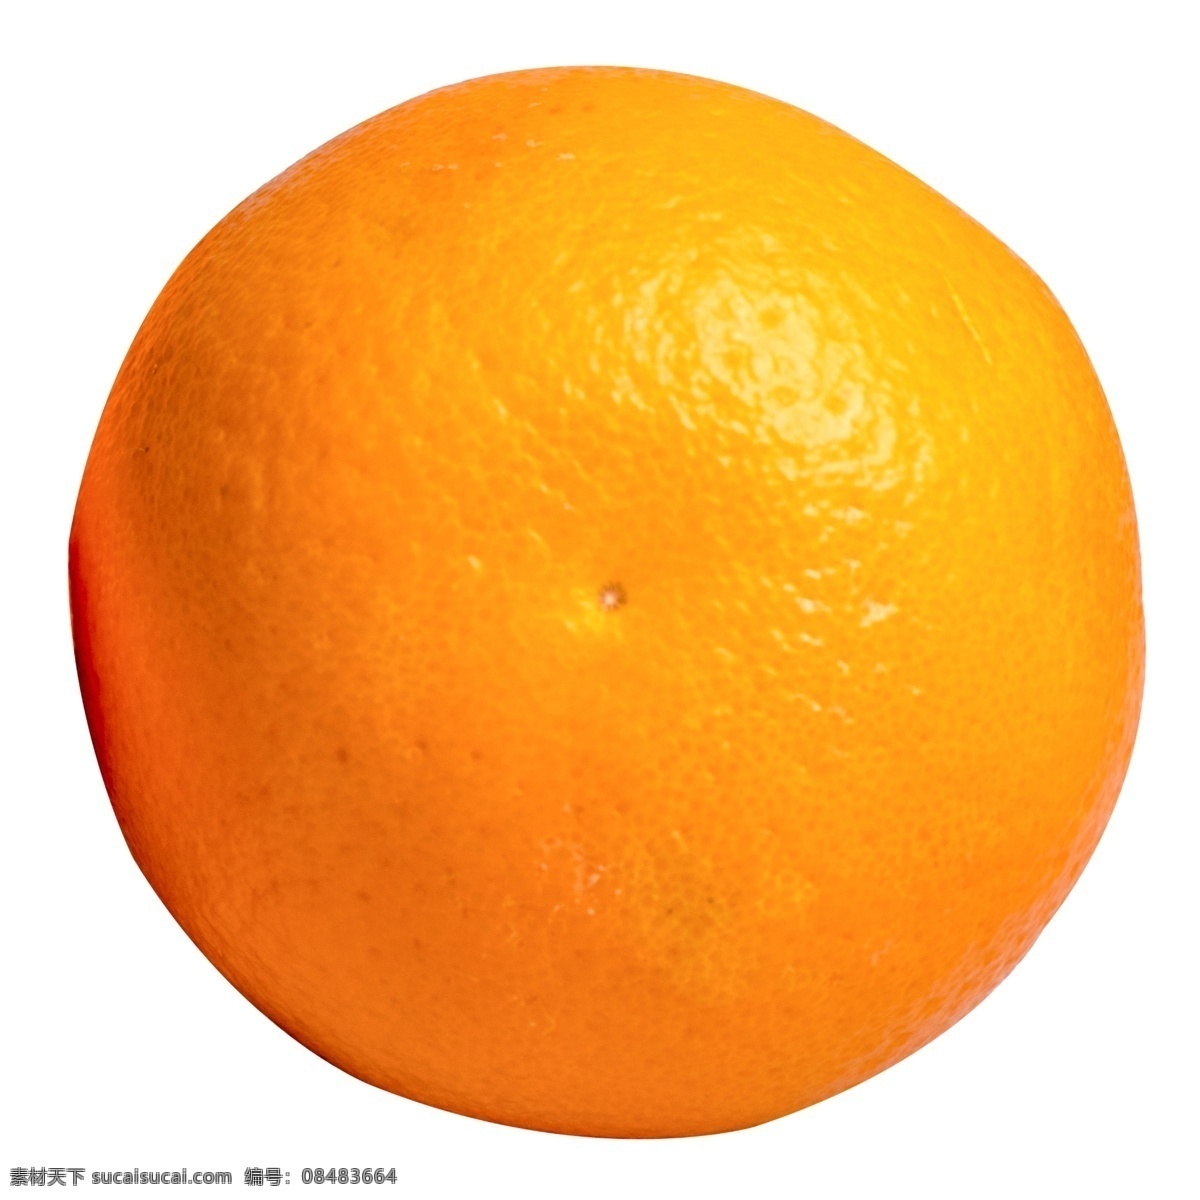 一个橙子 橙子 水果 水果橙子